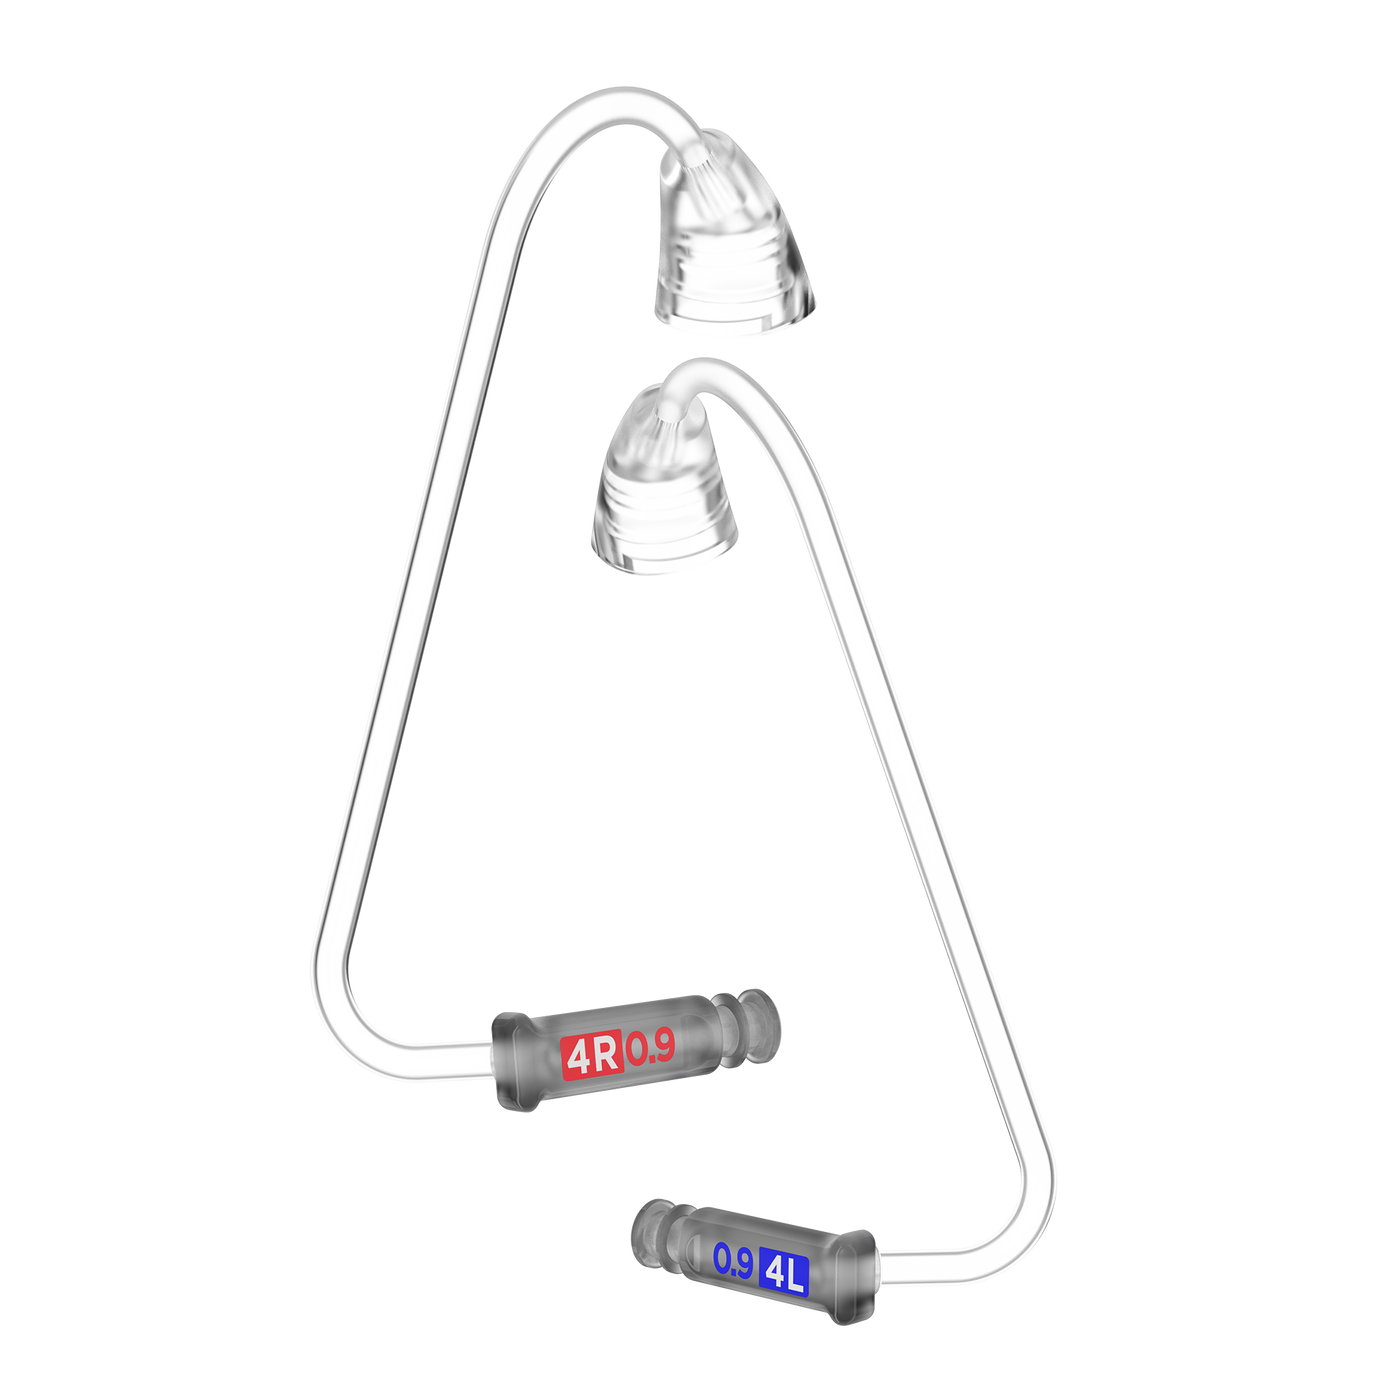     signia hearing aid accesories Ear Wear 3.0 Thintube 40.9 pair 10991613